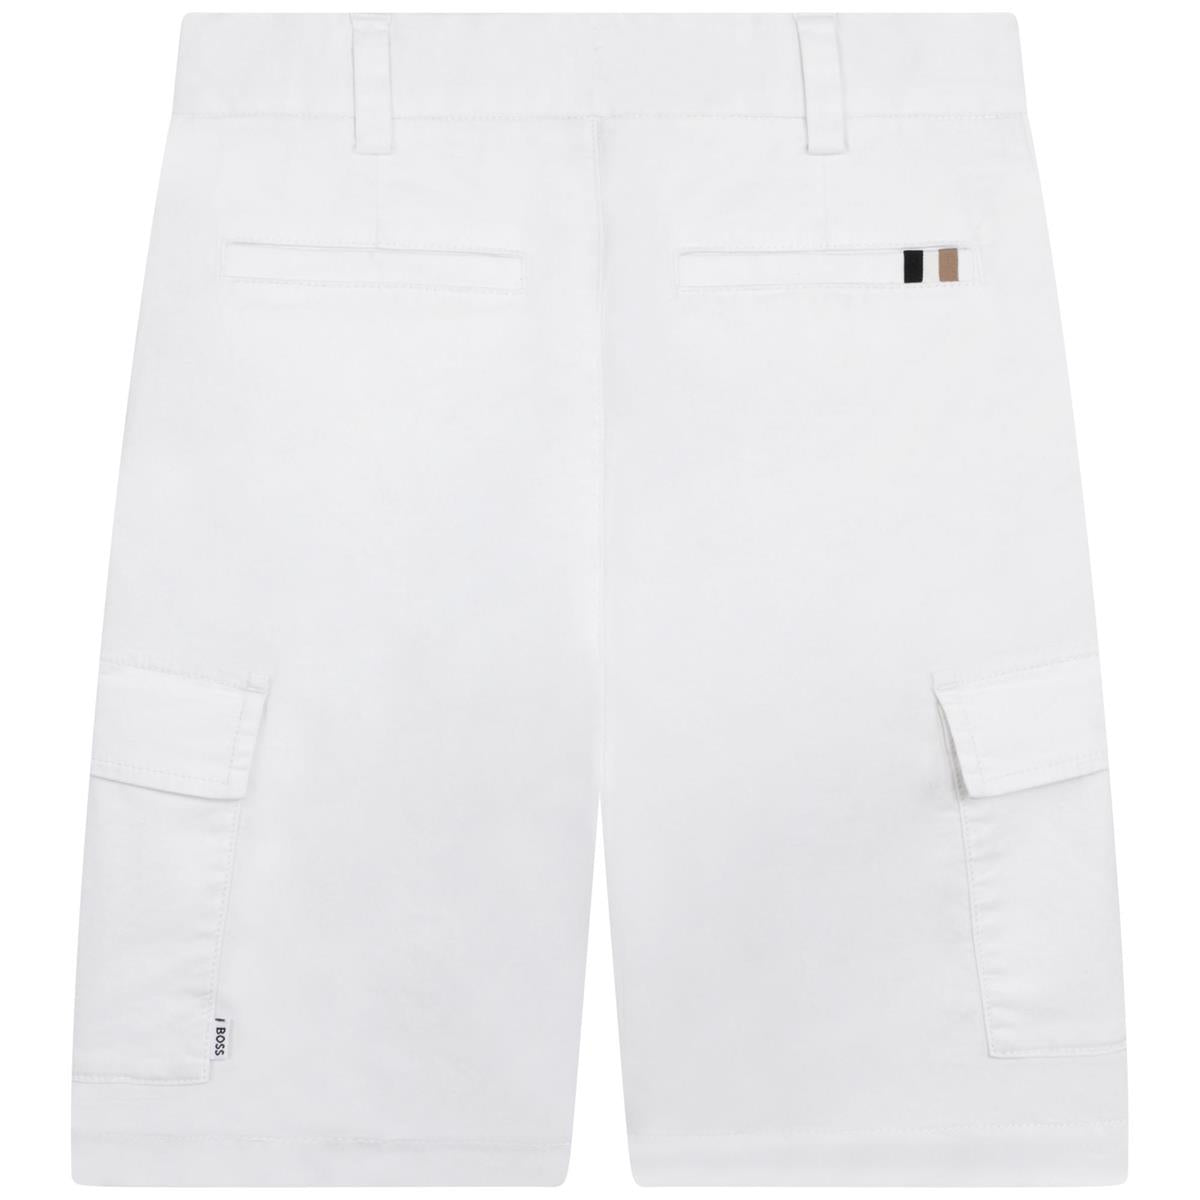 Boys White Shorts